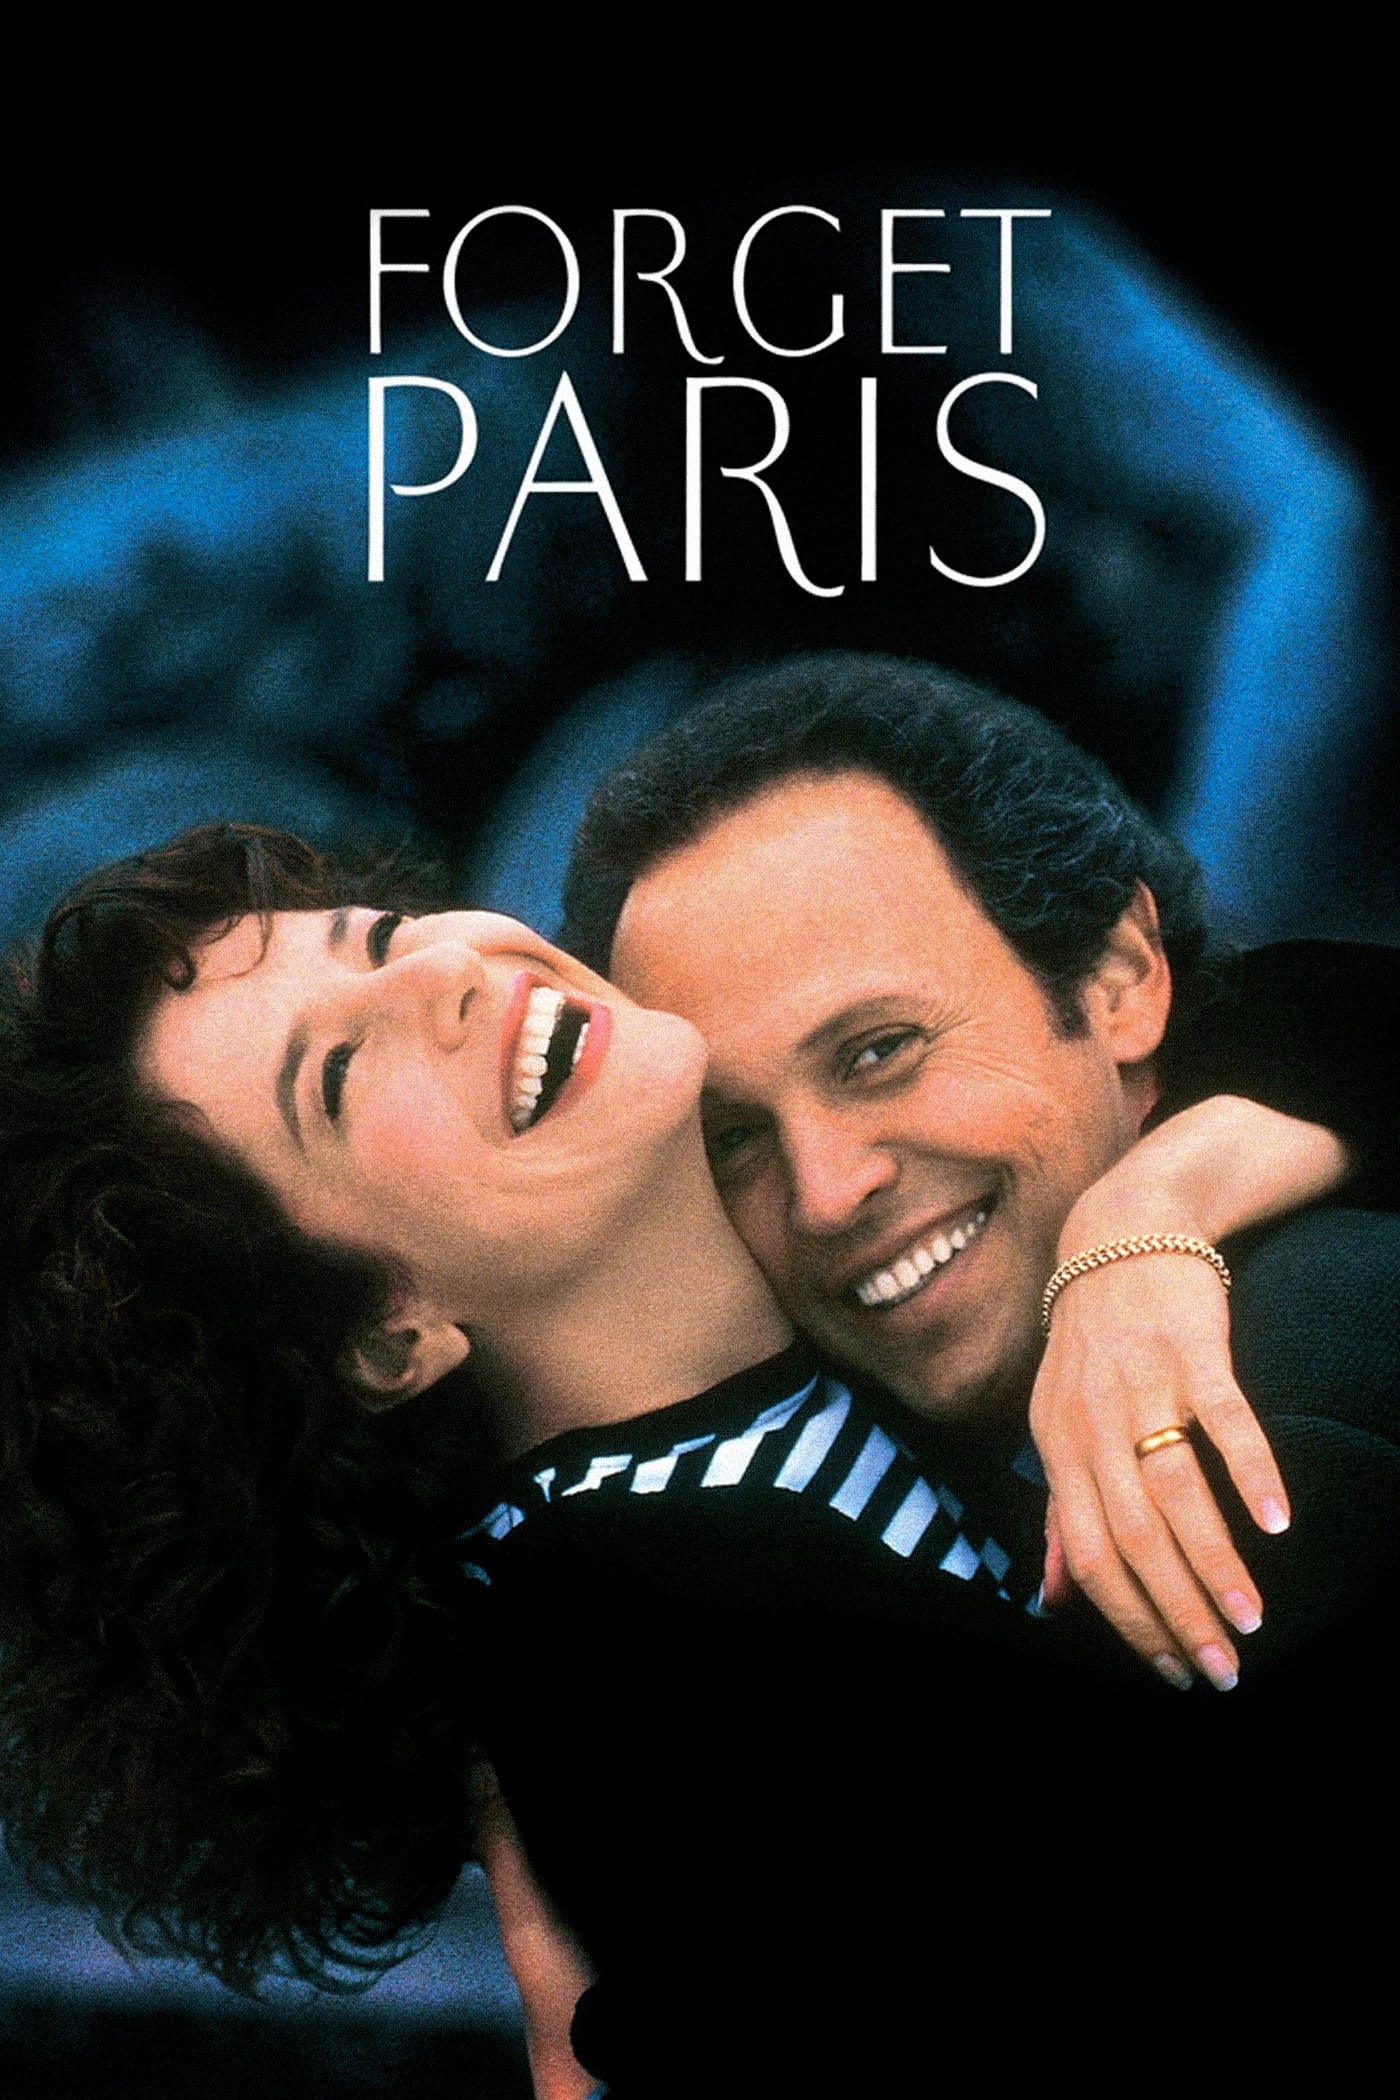 ดูหนังออนไลน์ฟรี Forget Paris 1995 ฟอร์เก็ต ปารีส บอกหัวใจให้คิดถึง